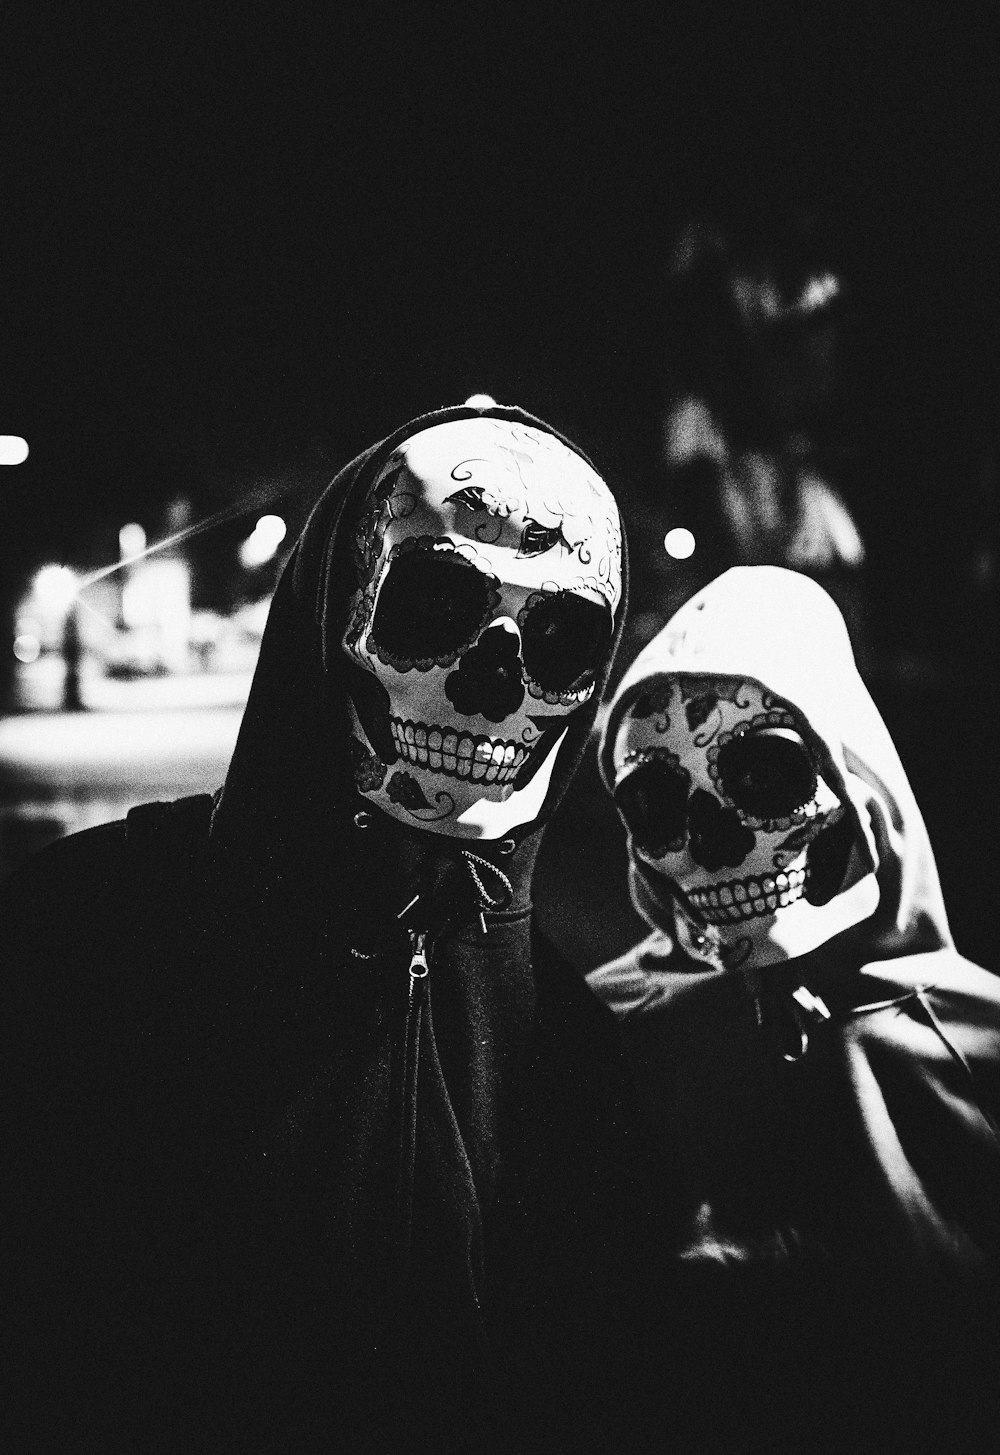 Foto en escala de grises de dos personas con máscaras